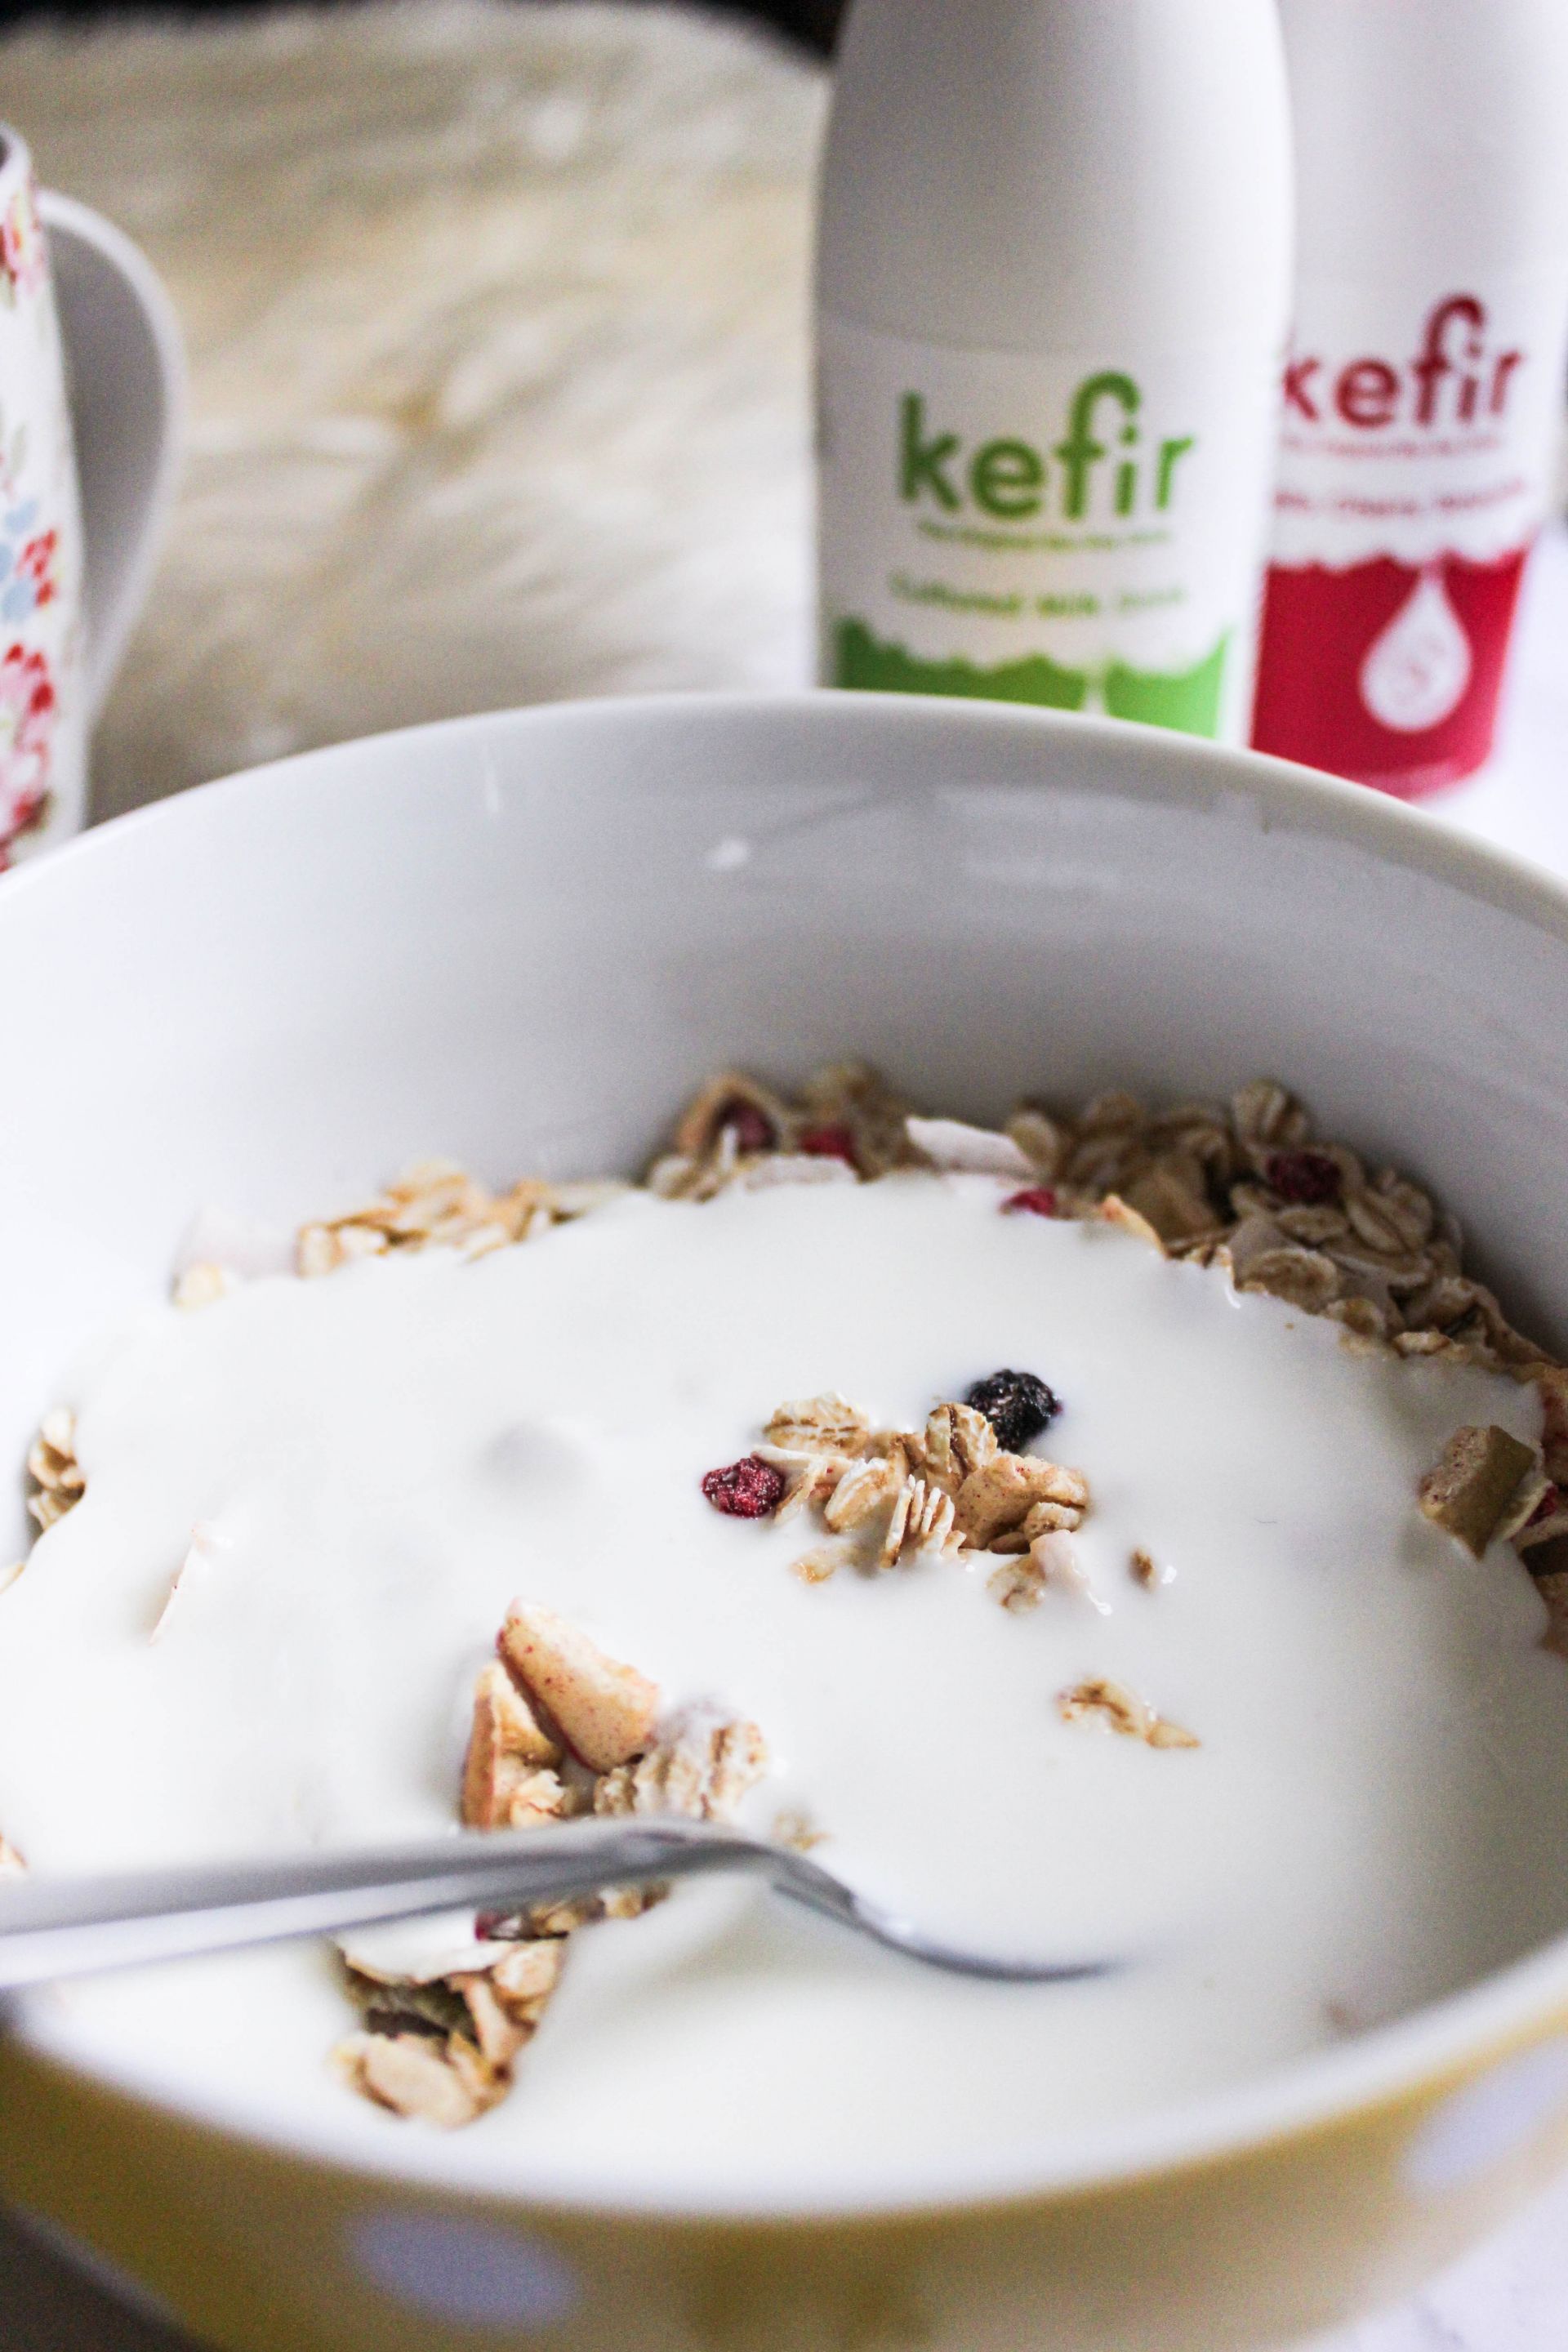 bio-tiful dairy kefir london review